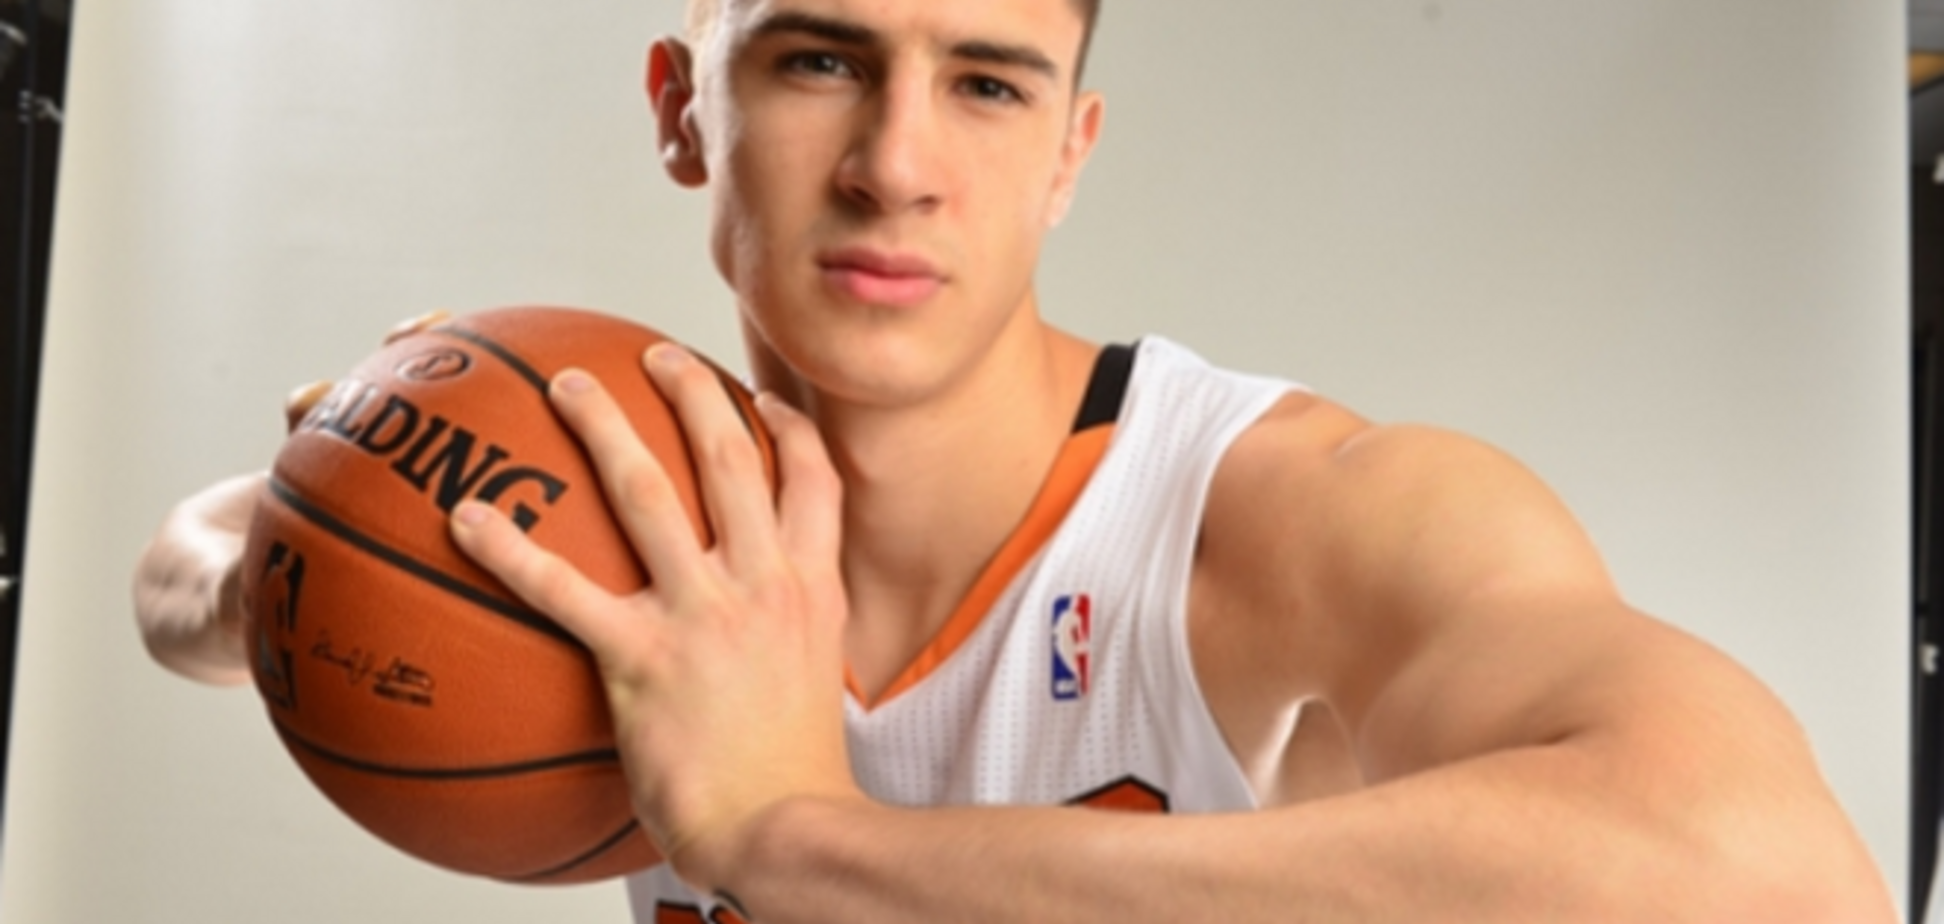 Баскетболист из НБА боится возвращаться в Украину